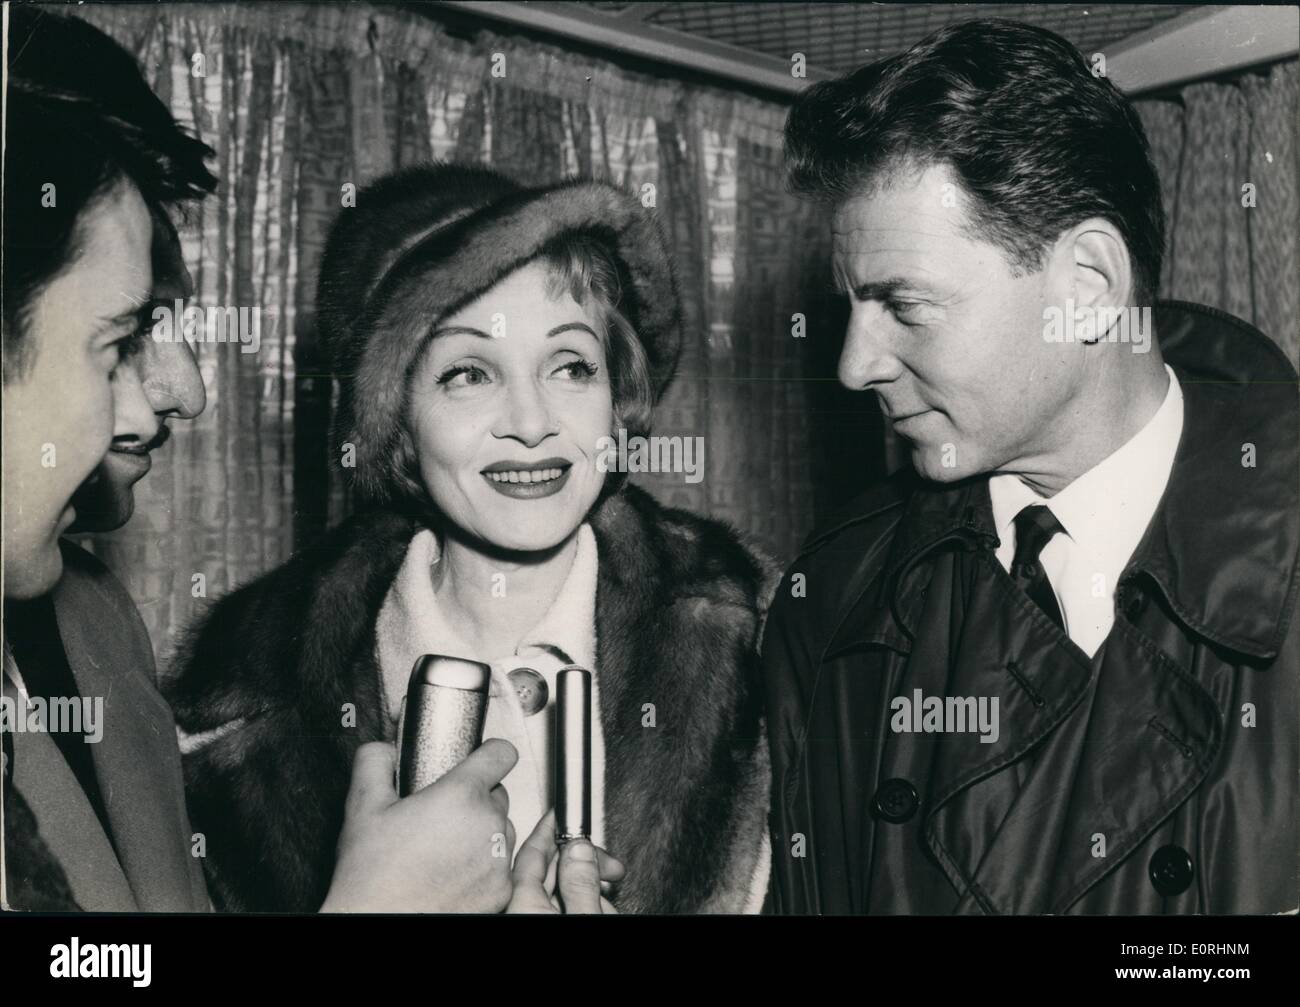 11 novembre 1959 - Marlene Dietrich arrive à Paris : Marlene Dietrich qui est de chanter  dans un théâtre de Paris sont arrivés à Orly ce matin. La photo montre la Marlene Dietrich accueilli par Jean-Pierre montant à son arrivée à l'aéroport ce matin seulement. Banque D'Images